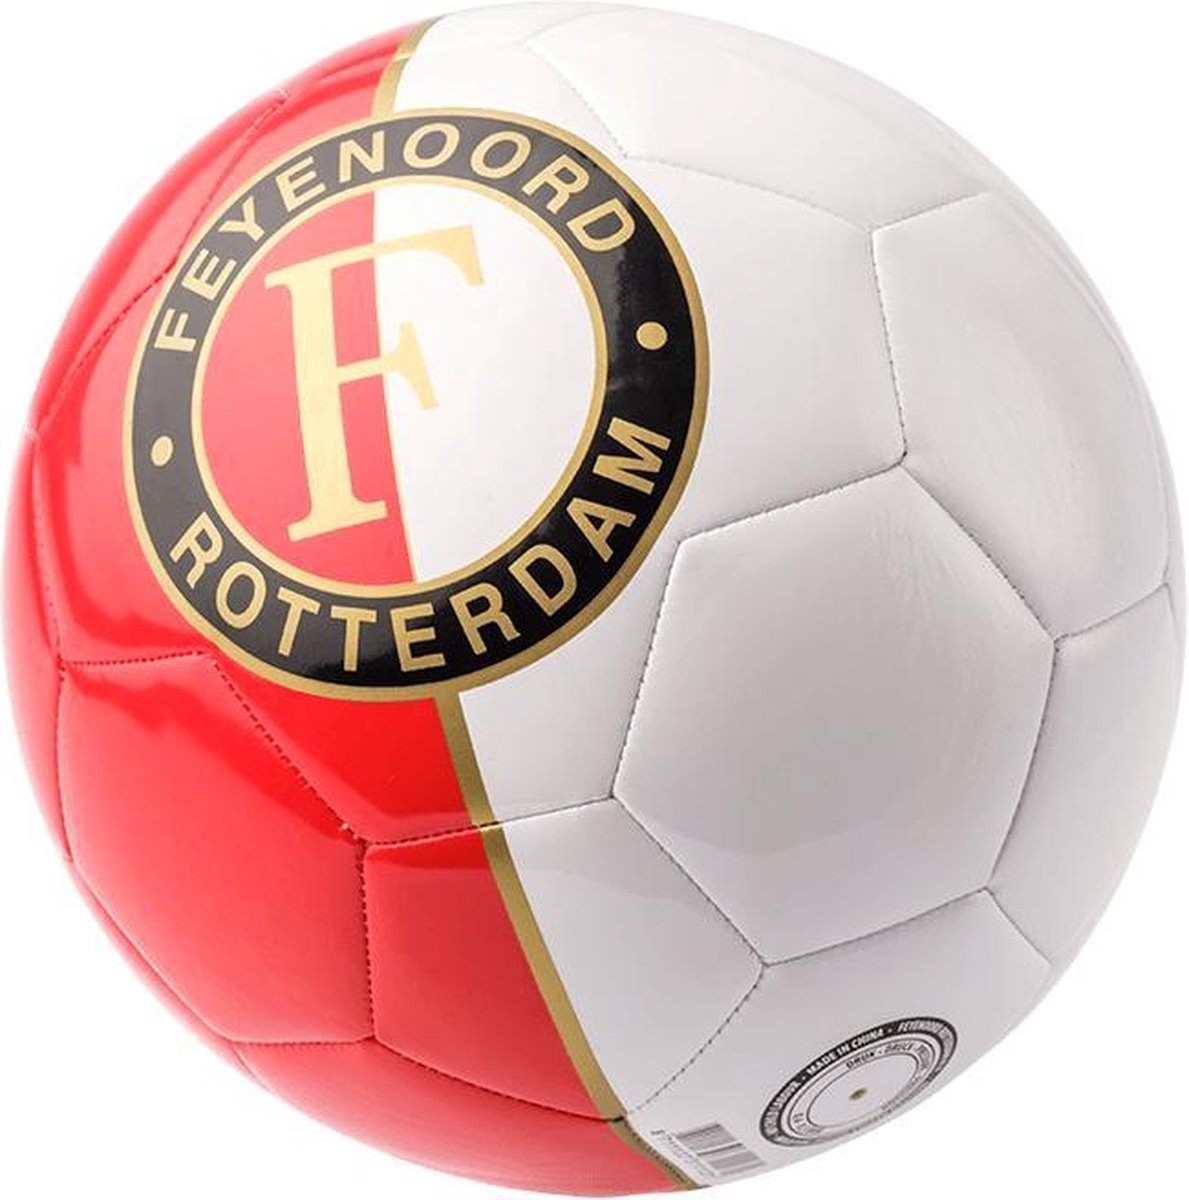 Bol Com Feyenoord Voetbal Rood Wit Logo